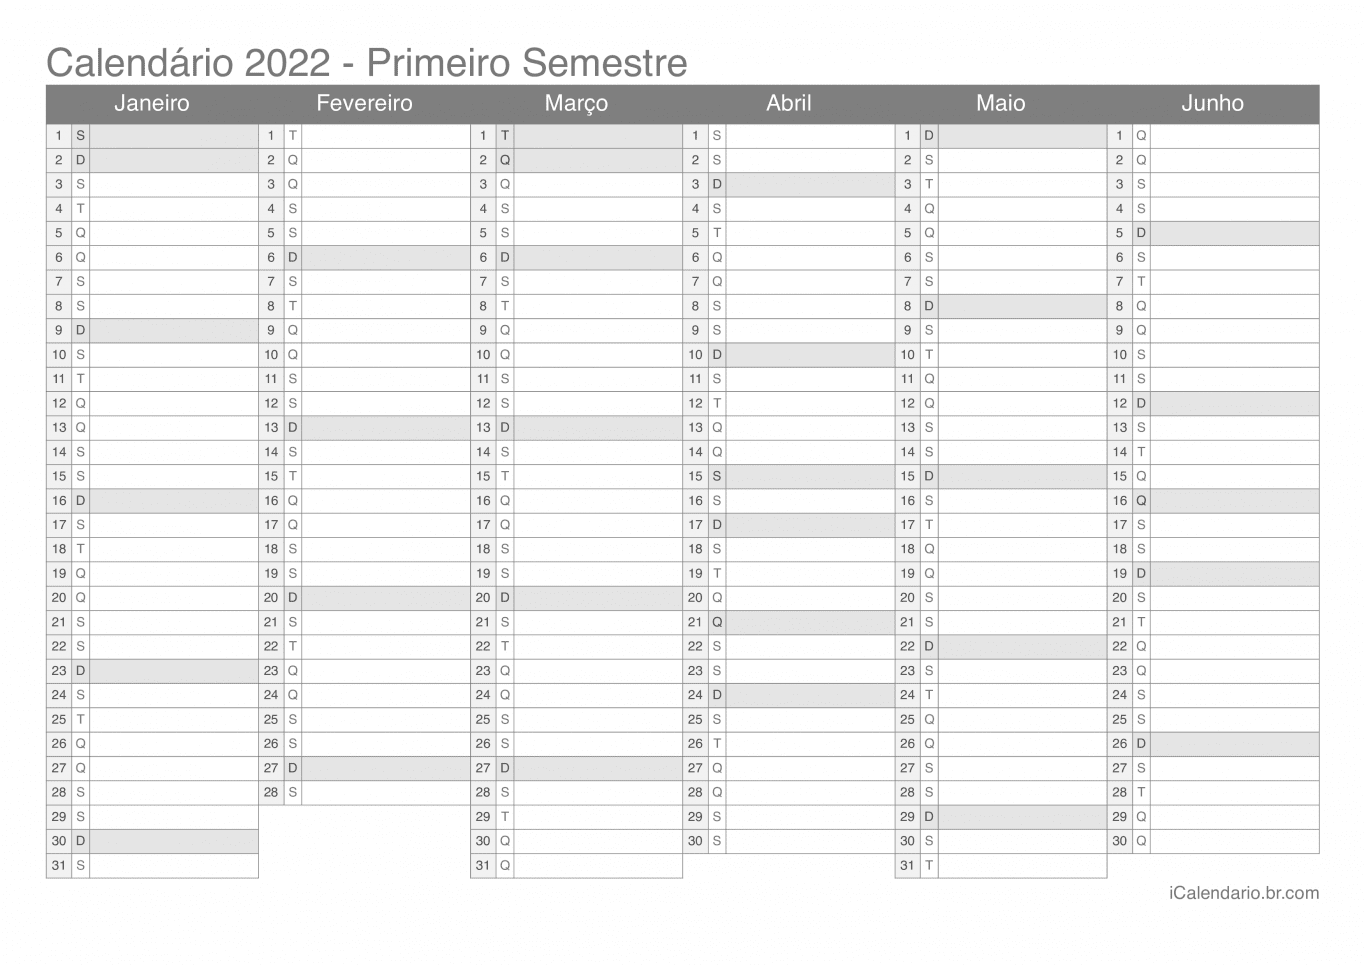 Calendário por semestre 2022